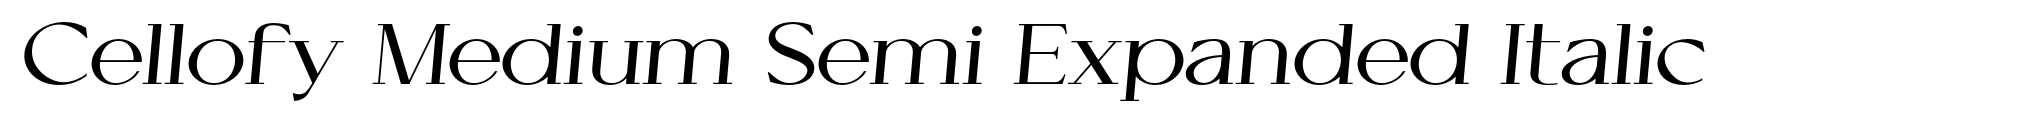 Cellofy Medium Semi Expanded Italic image